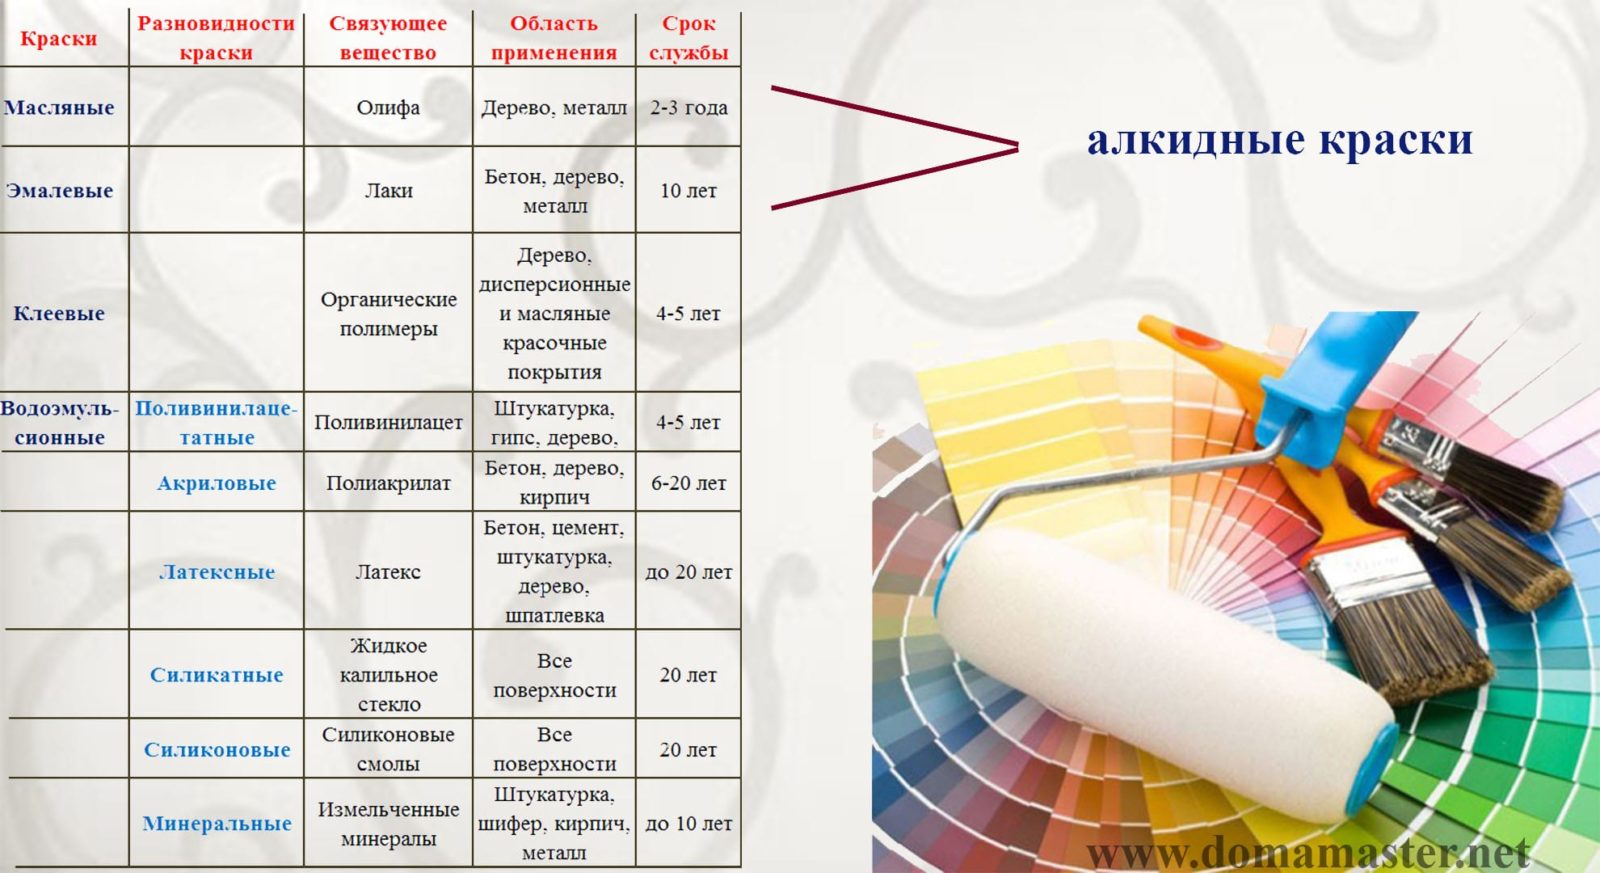 Обзор красок - характеристики всех видов по химическому составу, по применению